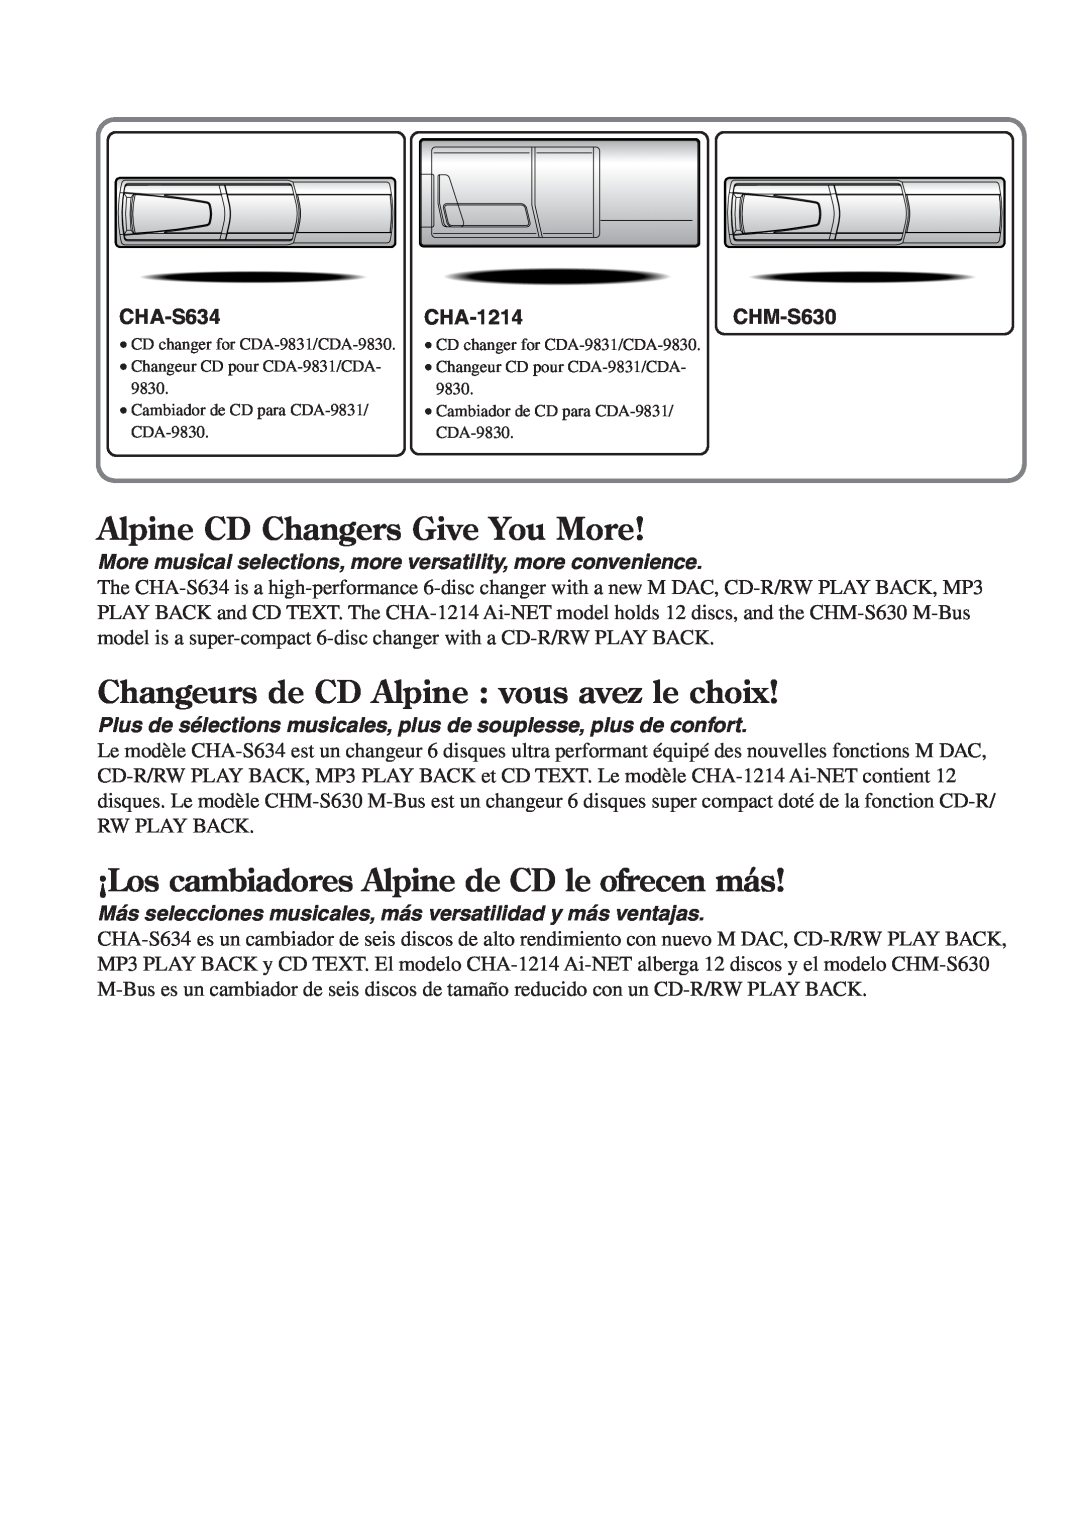 Alpine CDA-9830 Alpine CD Changers Give You More, Changeurs de CD Alpine vous avez le choix, CHA-S634, CHA-1214CHM-S630 